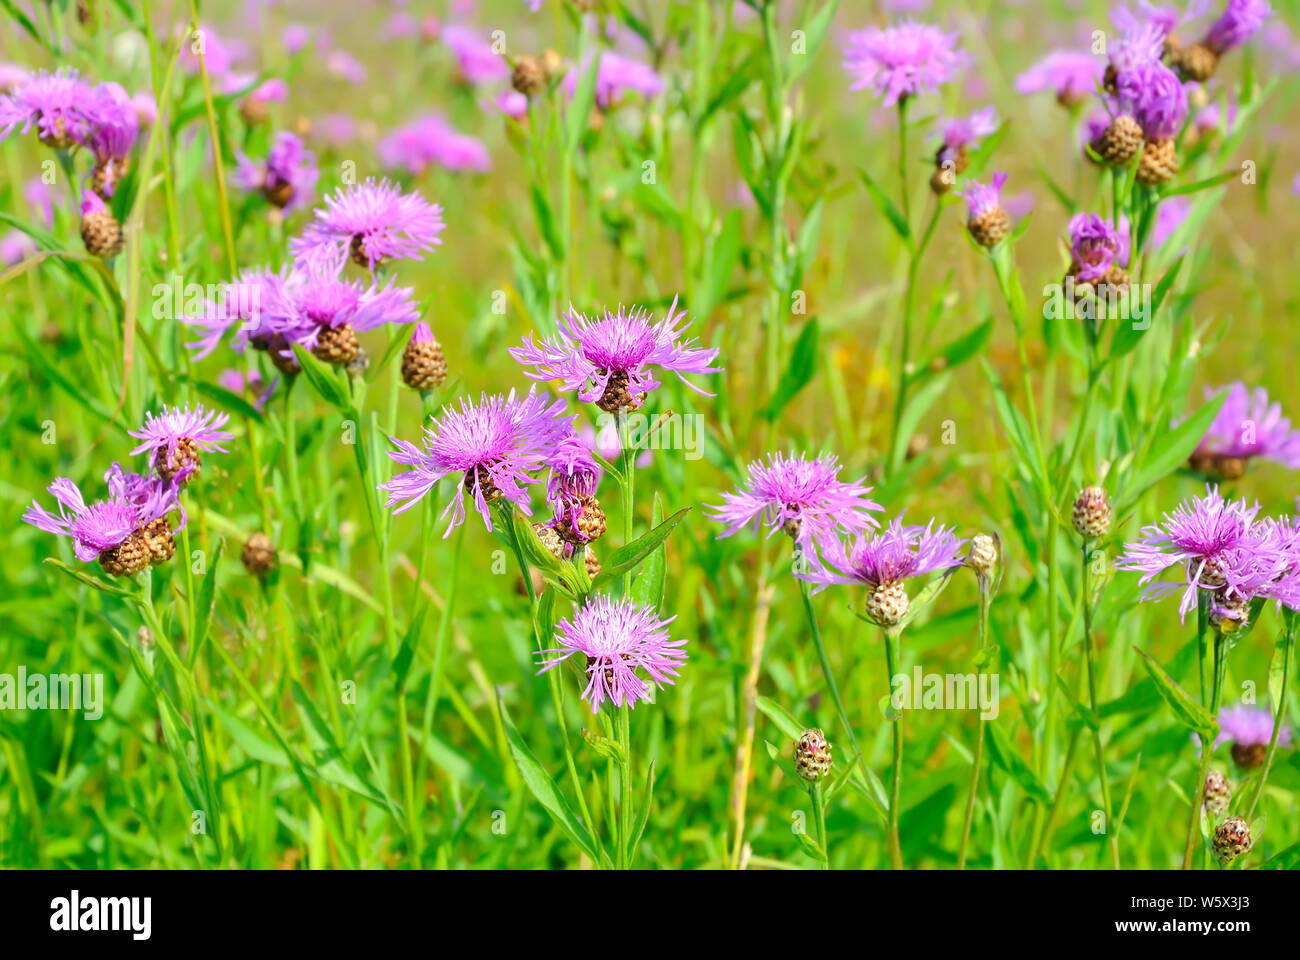 Cornflower (Centaurea jacea) flowers, selective focus Stock Photo